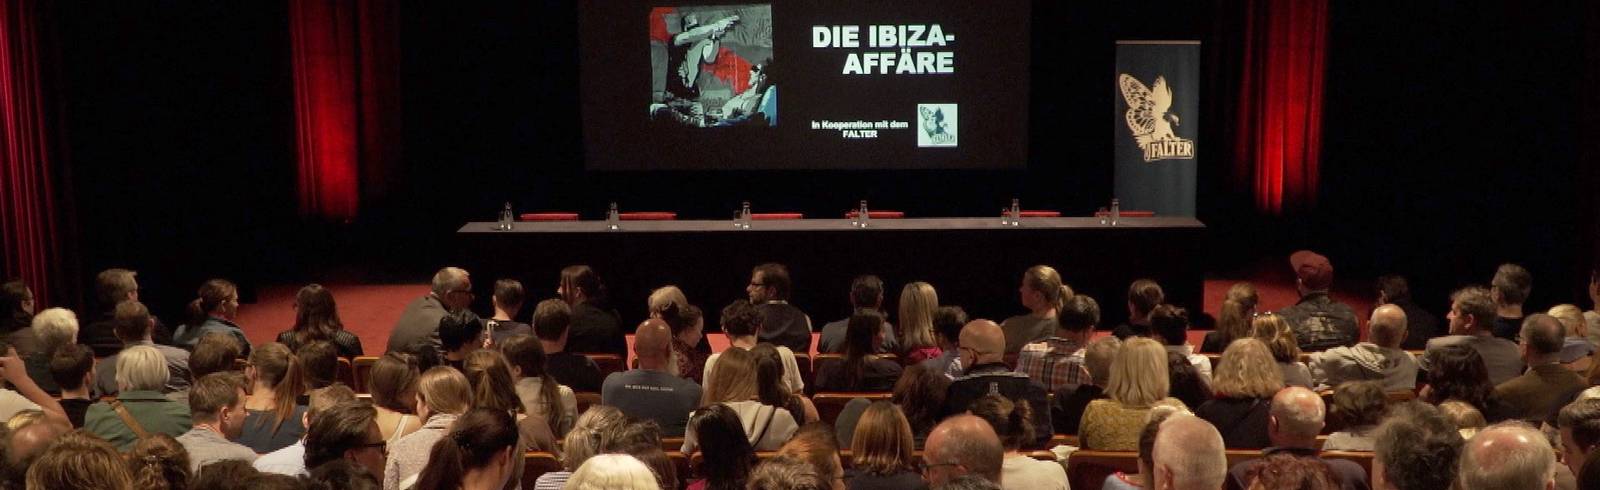 Ibiza-Affäre: Aufdecker präsentieren ihr Buch